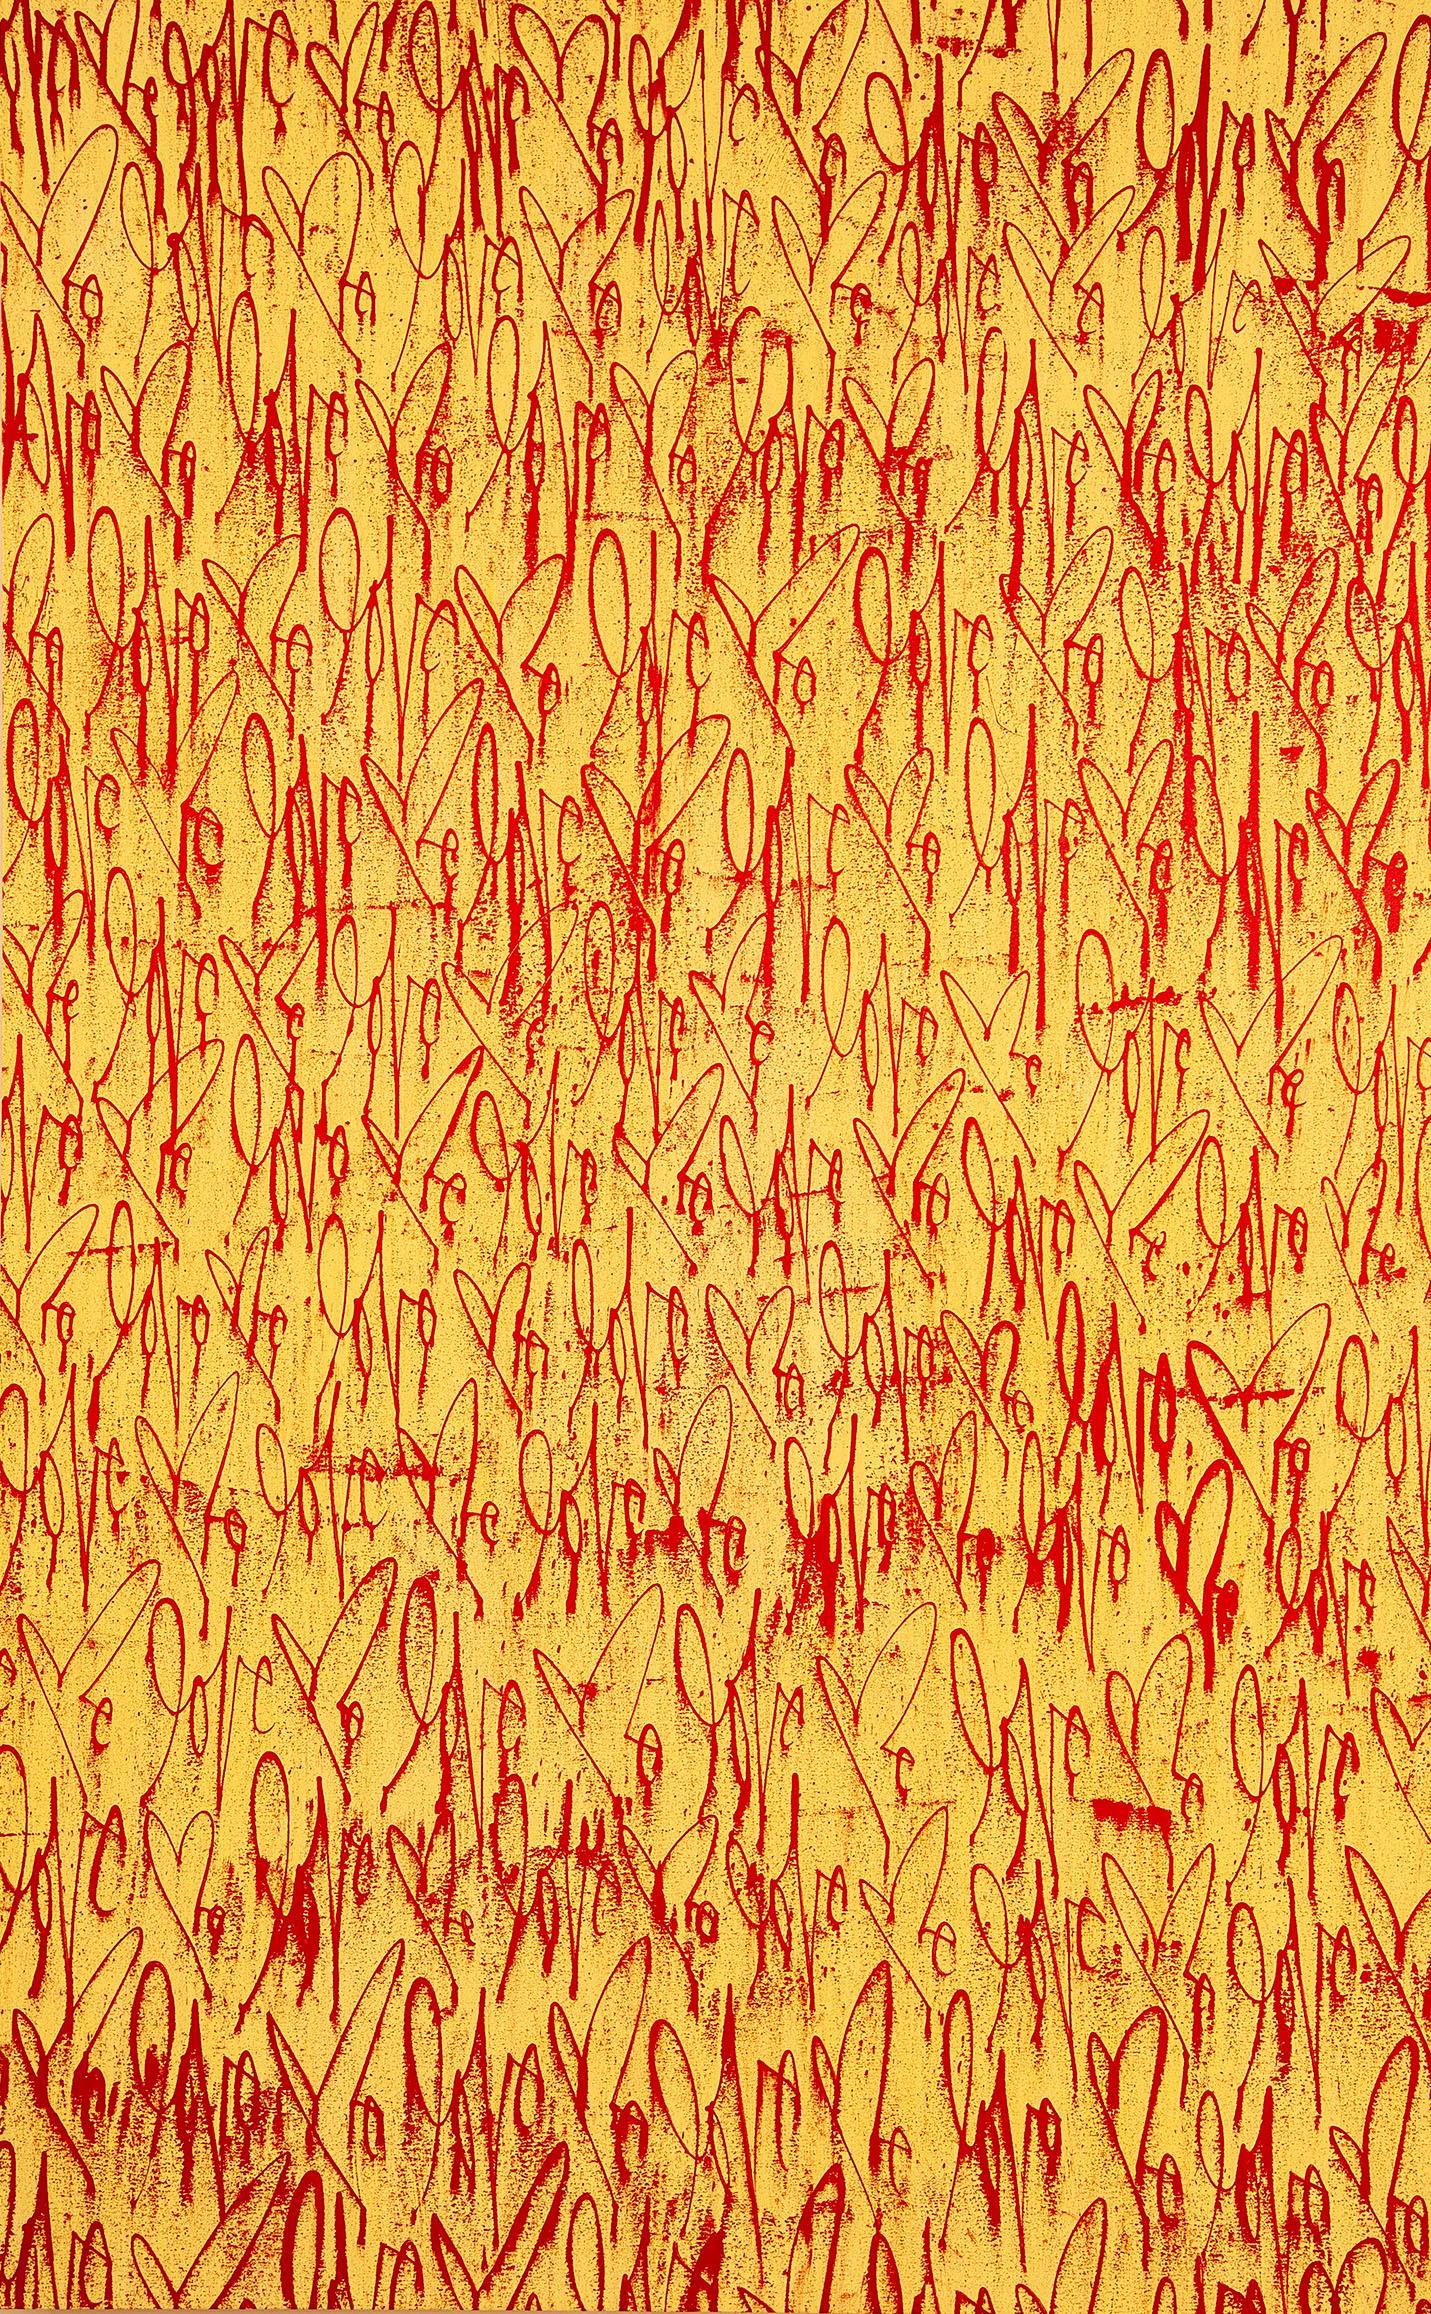 Curtis Kulig, Love Me on Canvas (Gelb & Rot), 2011:
Dieses einzigartige Gemälde "Love Me" ist nicht zu übersehen. Ein expressionistischer gelber Hintergrund, kombiniert mit Kuligs ikonischem rotem Anhänger, bringt diese große Geste des Künstlers in